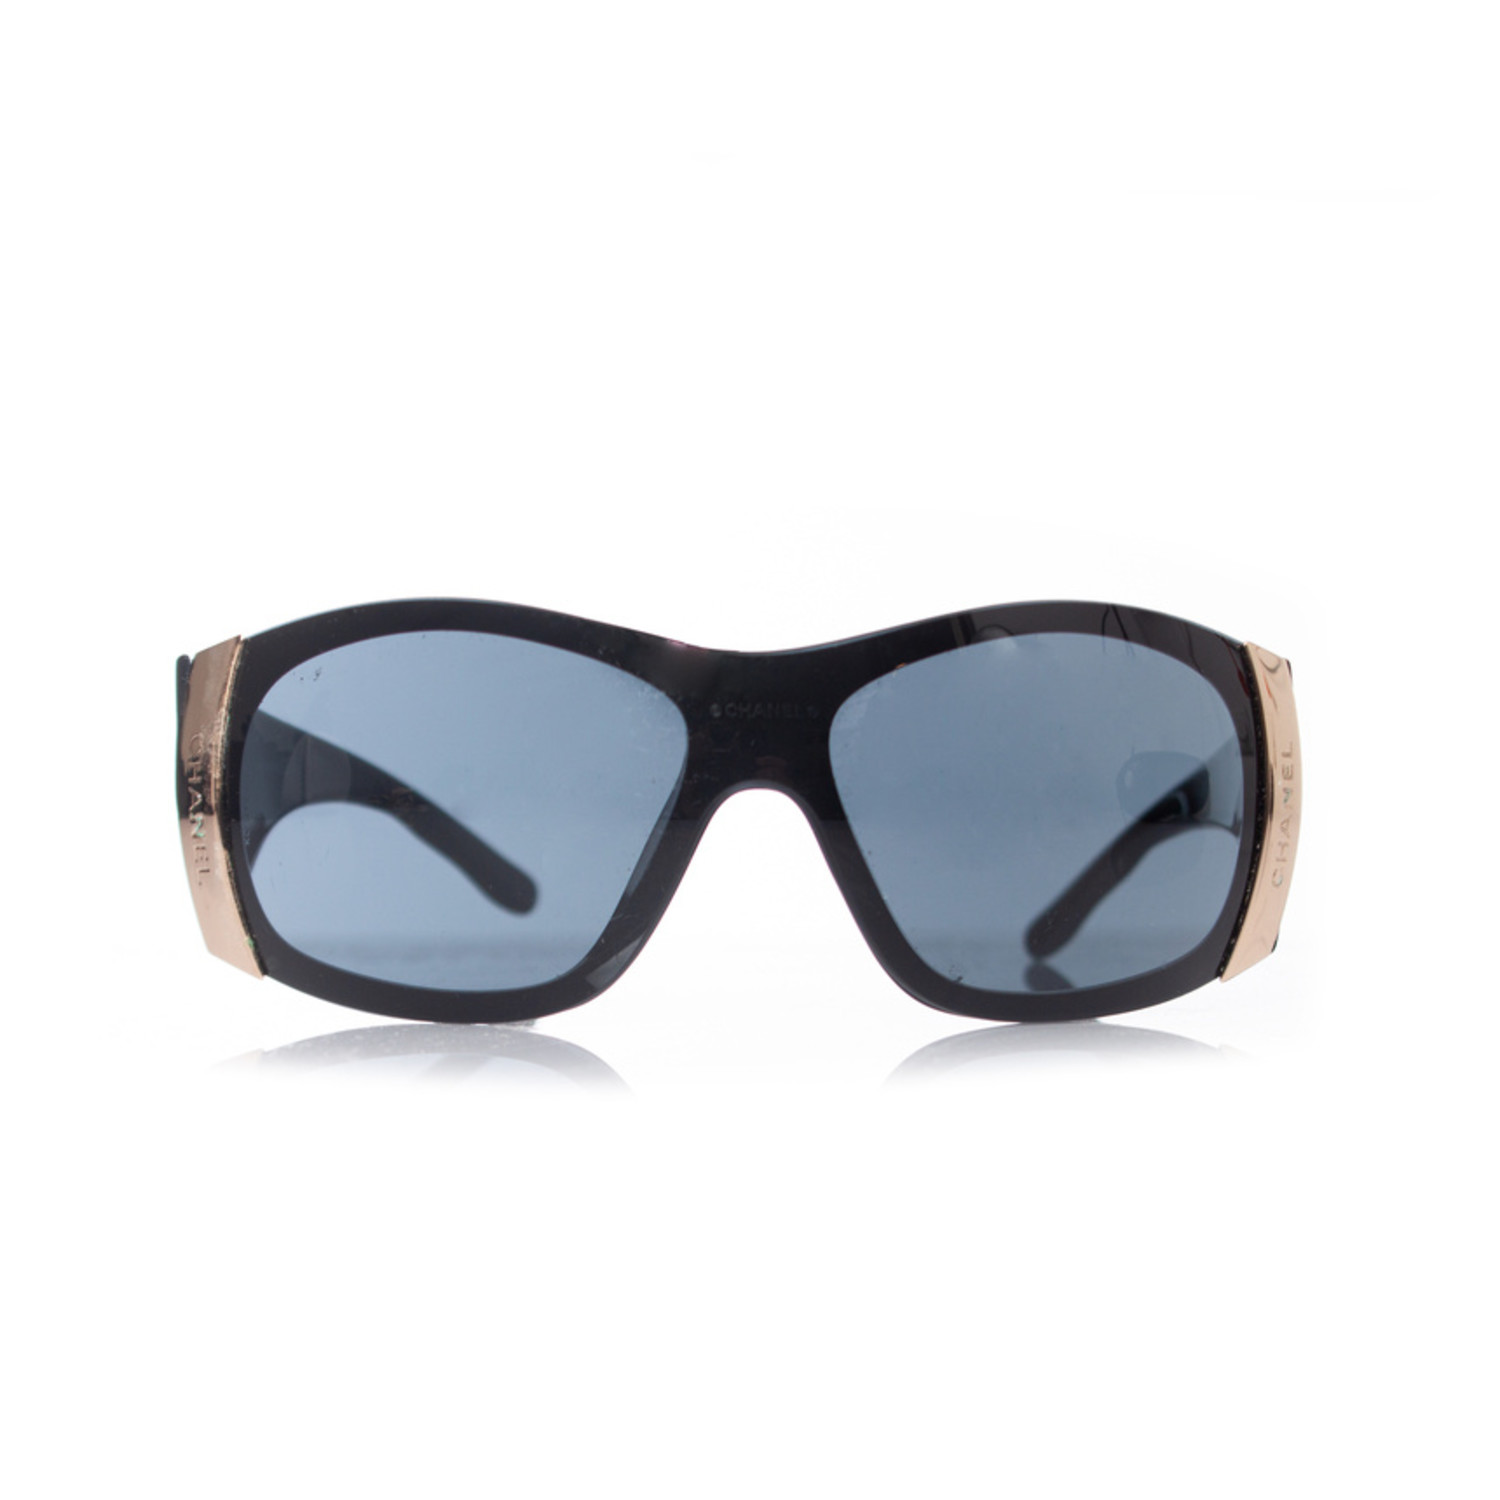 Chanel Black Shield Sunglasses 4126 Chanel